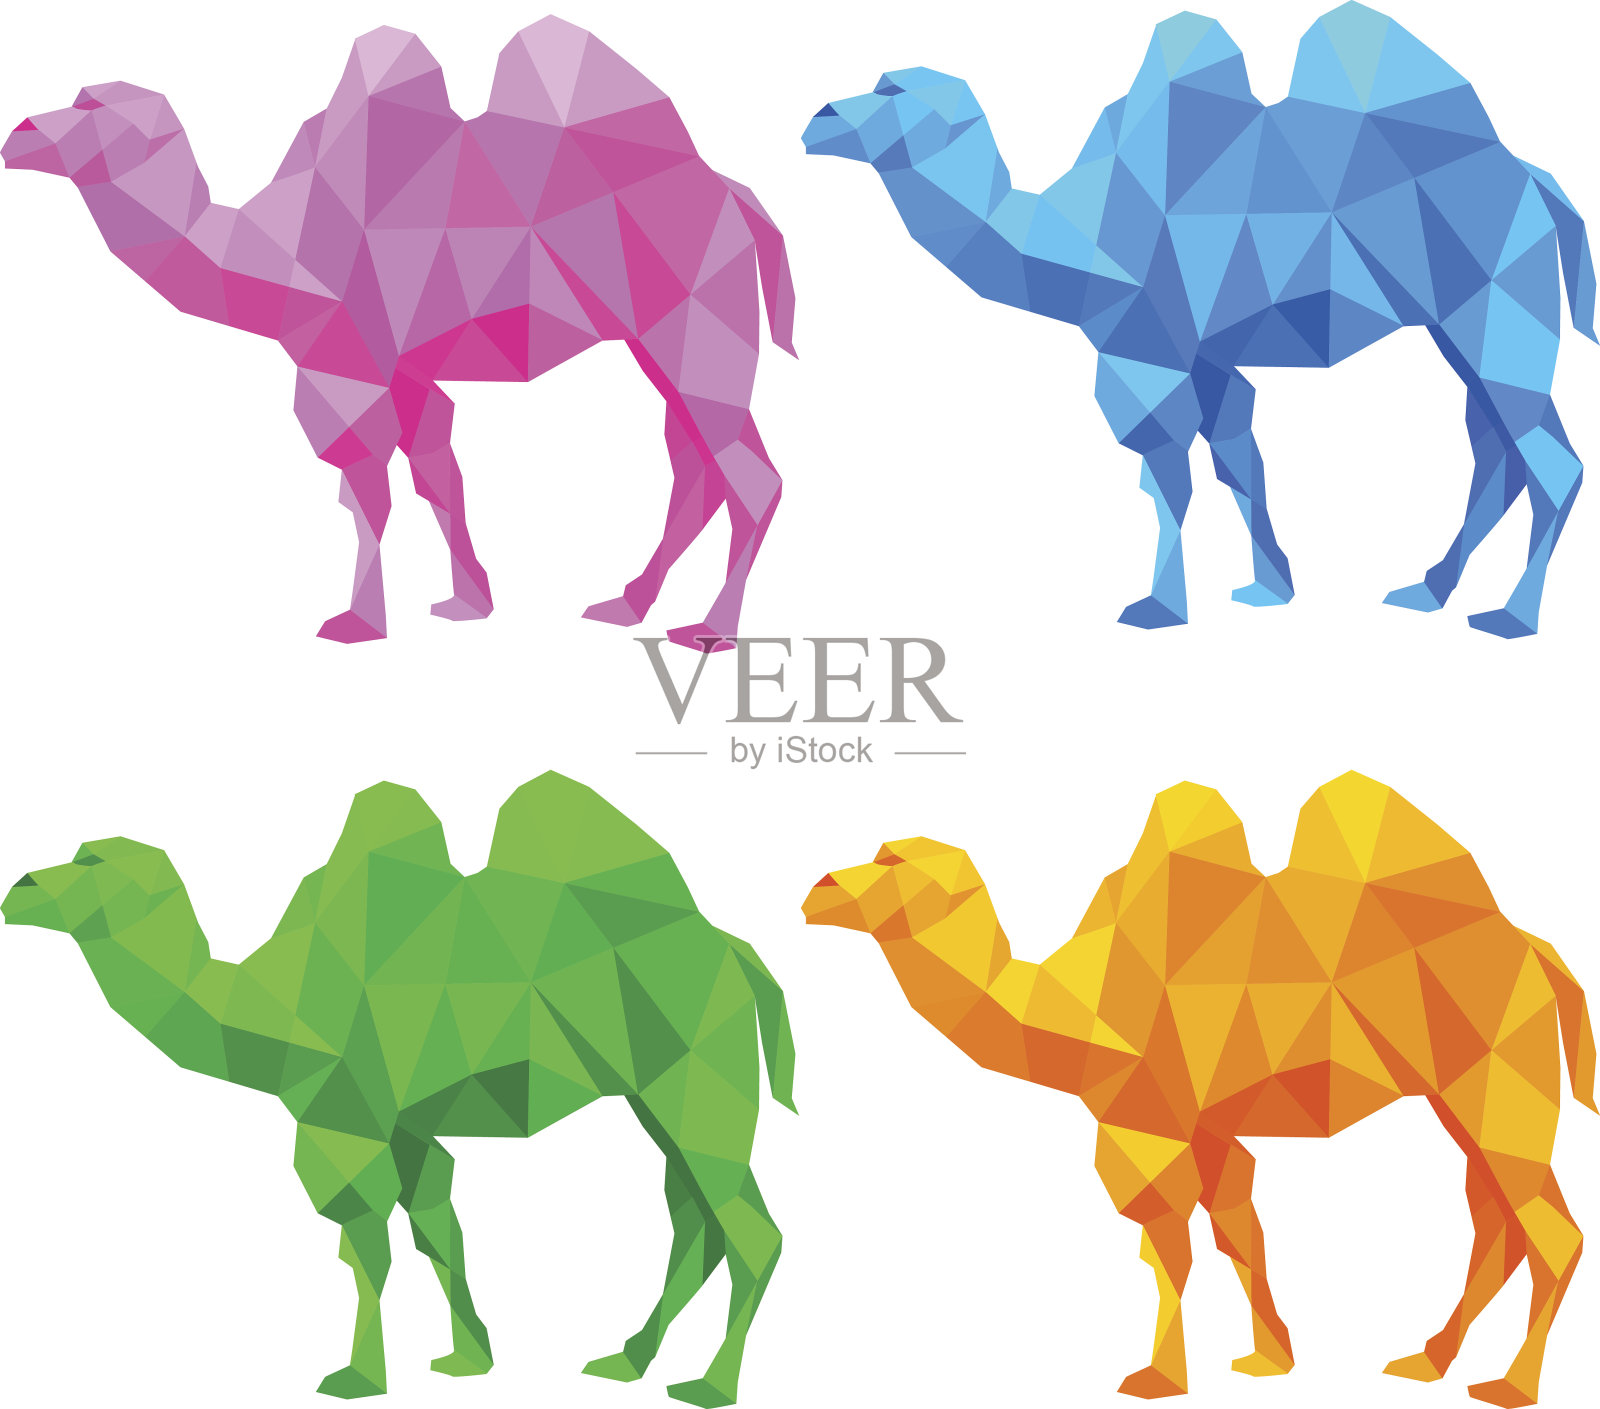 骆驼形状的彩色三角形插画图片素材